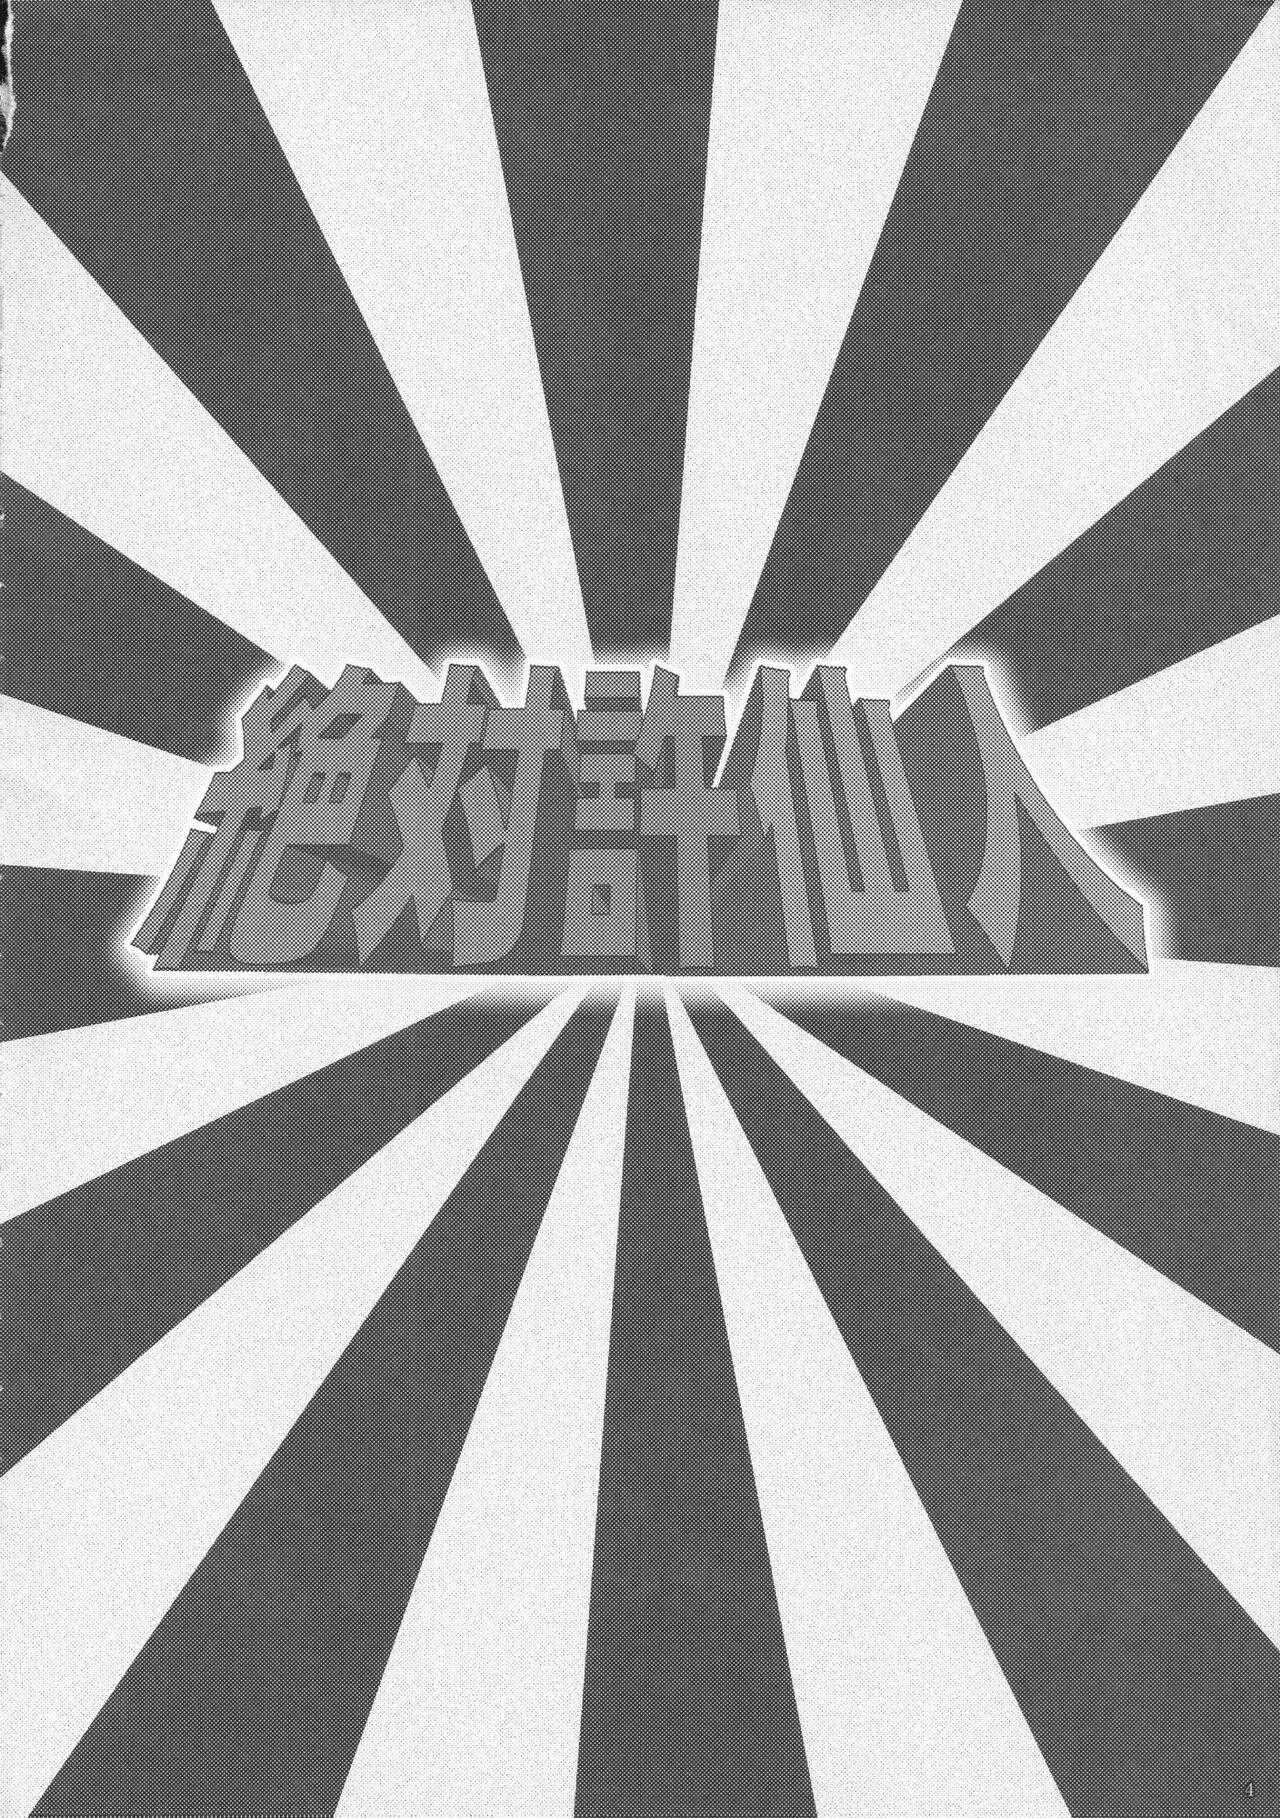 New Zettai Yurusennin Touhou Ita Toshiaki Goudou 3 - Touhou project Boy - Page 3